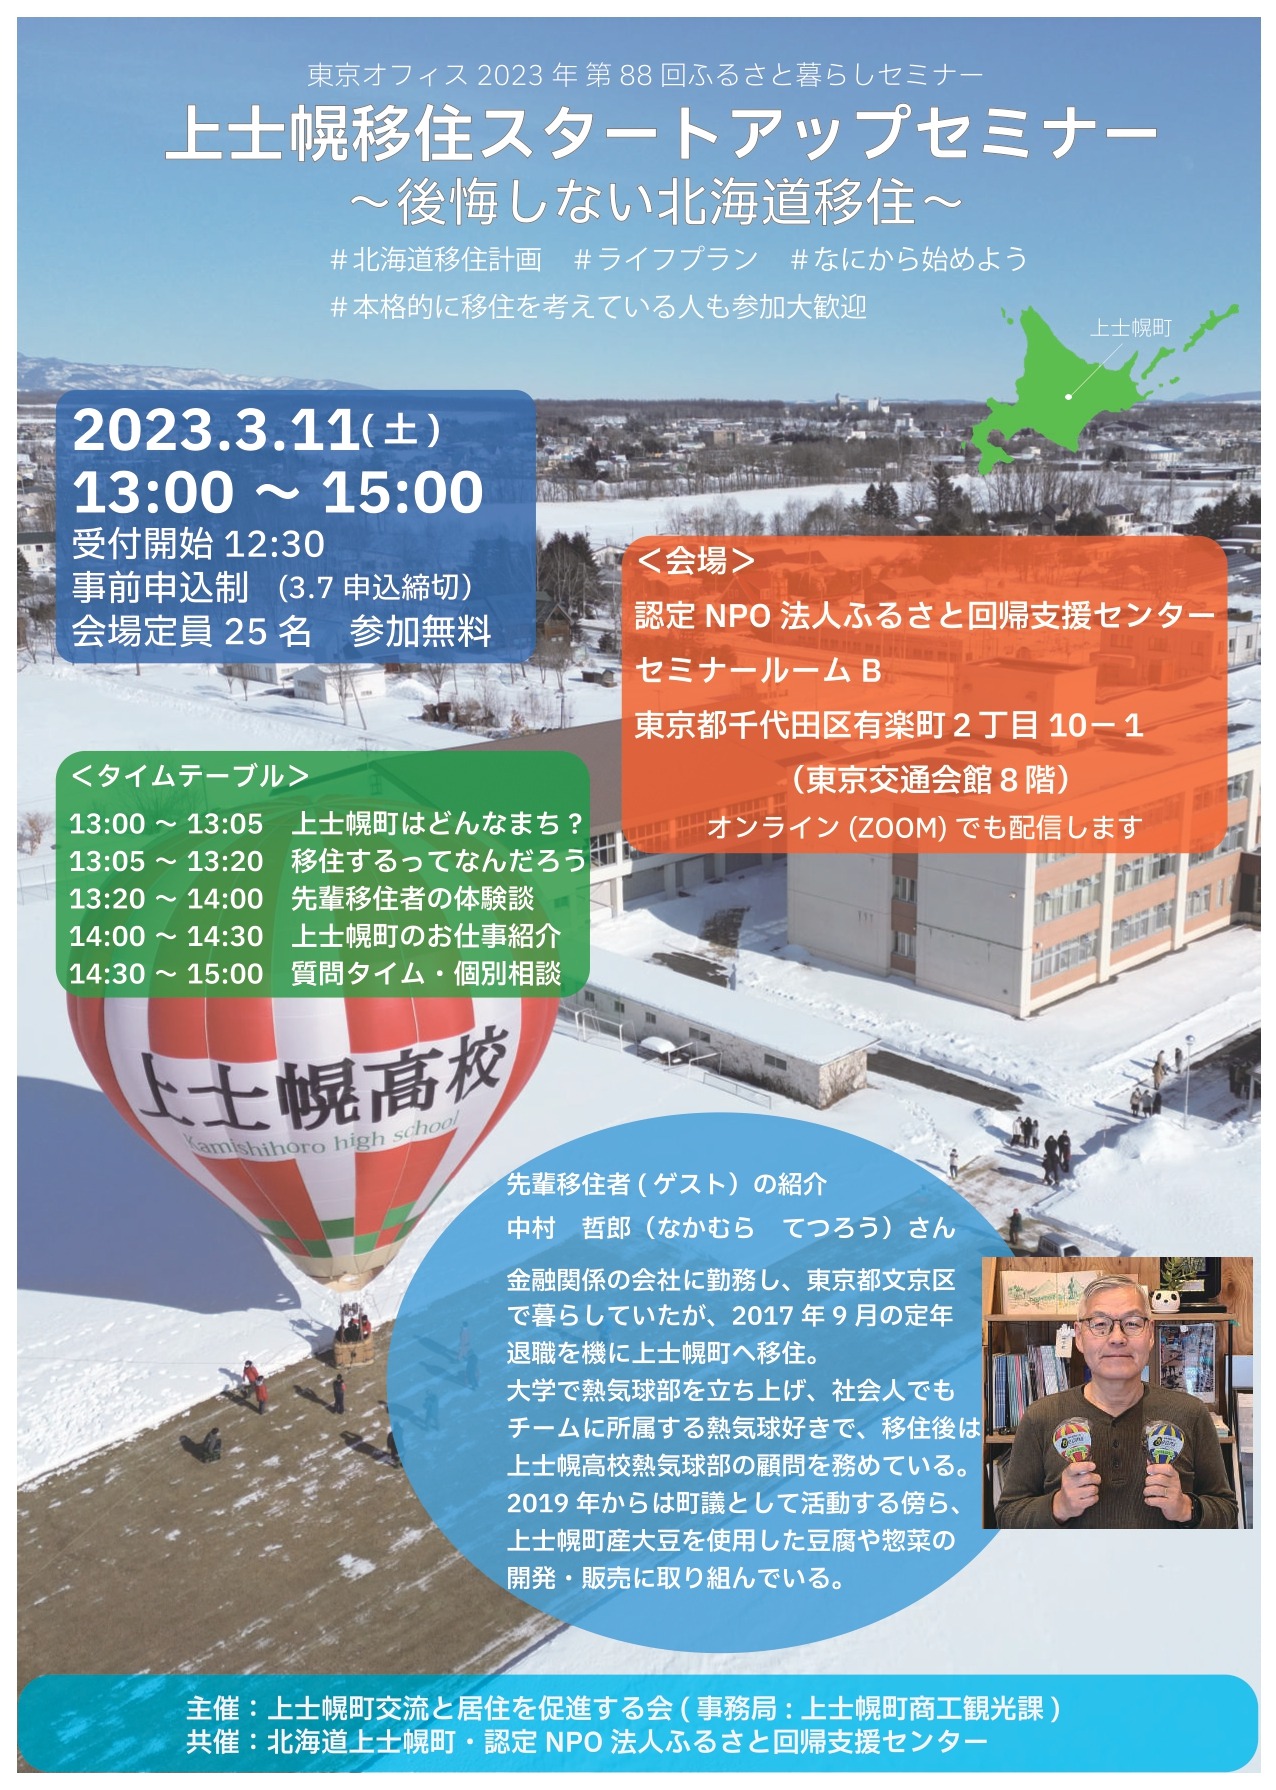 東京で上士幌暮らしセミナーを開催しますの画像